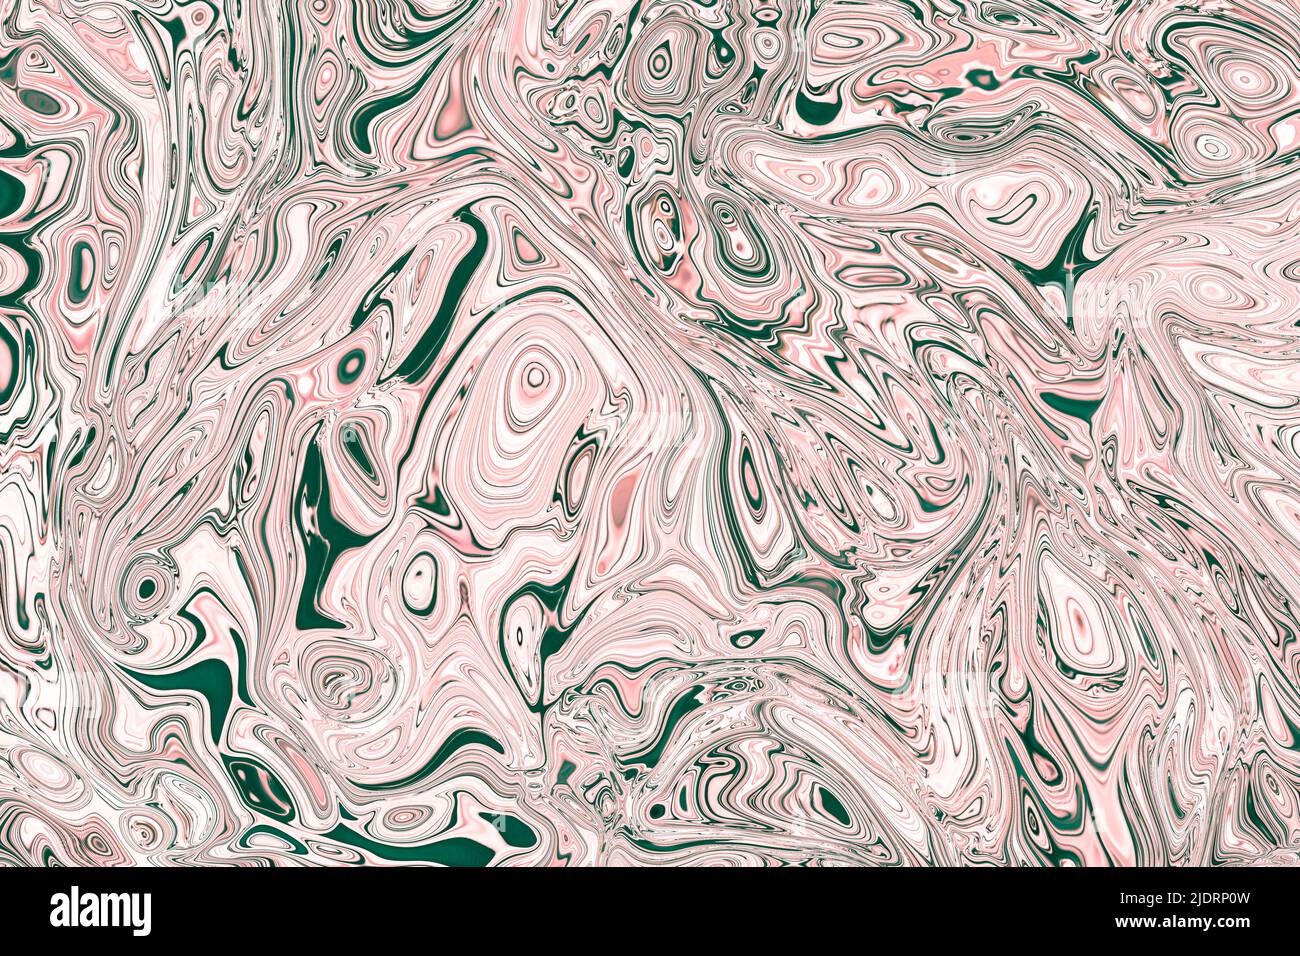 Fond de bulles d'encre psychédélique avec des peintures mixtes rose et vert foncé. Fluide conceptuel avec peinture acrylique dans l'humeur chaotique et grotesk. Marbre avec Banque D'Images